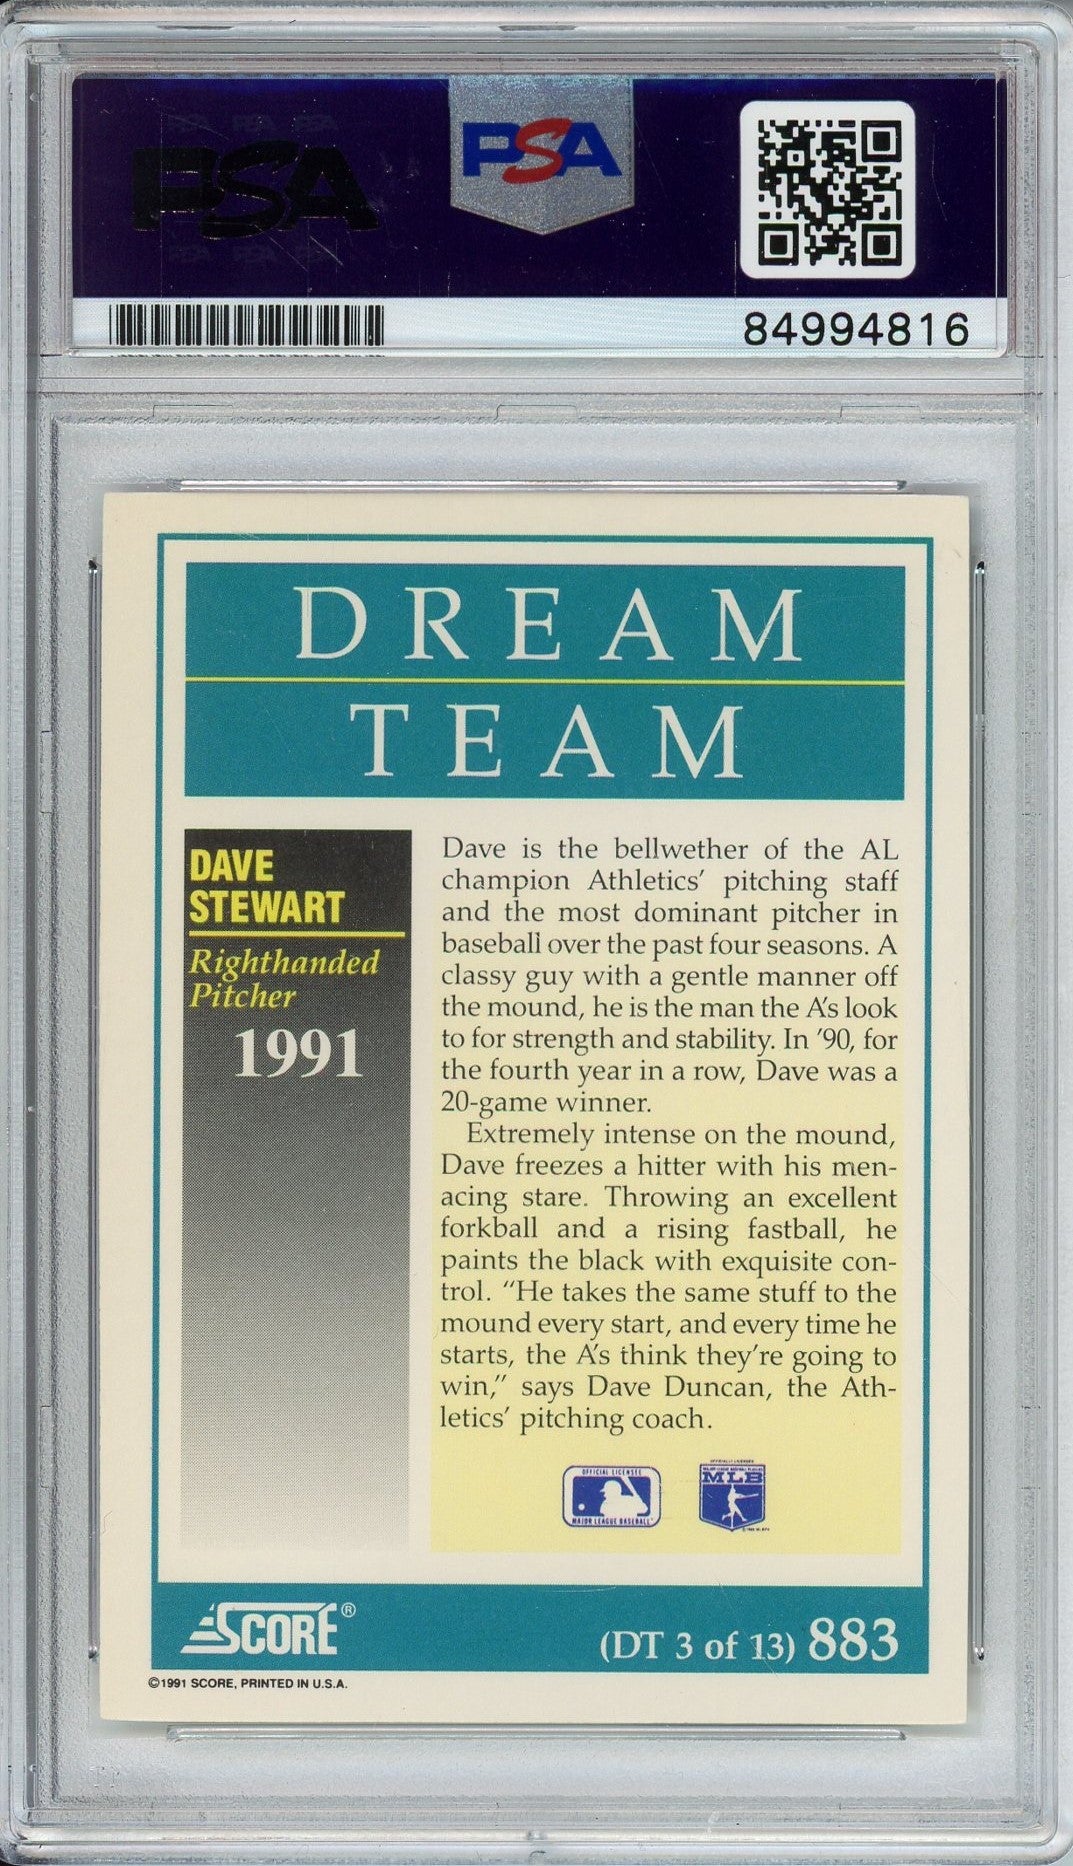 1991 SCORE DAVE STEWART #883 DREAM TEAM PSA/DNA AUTO (4816)